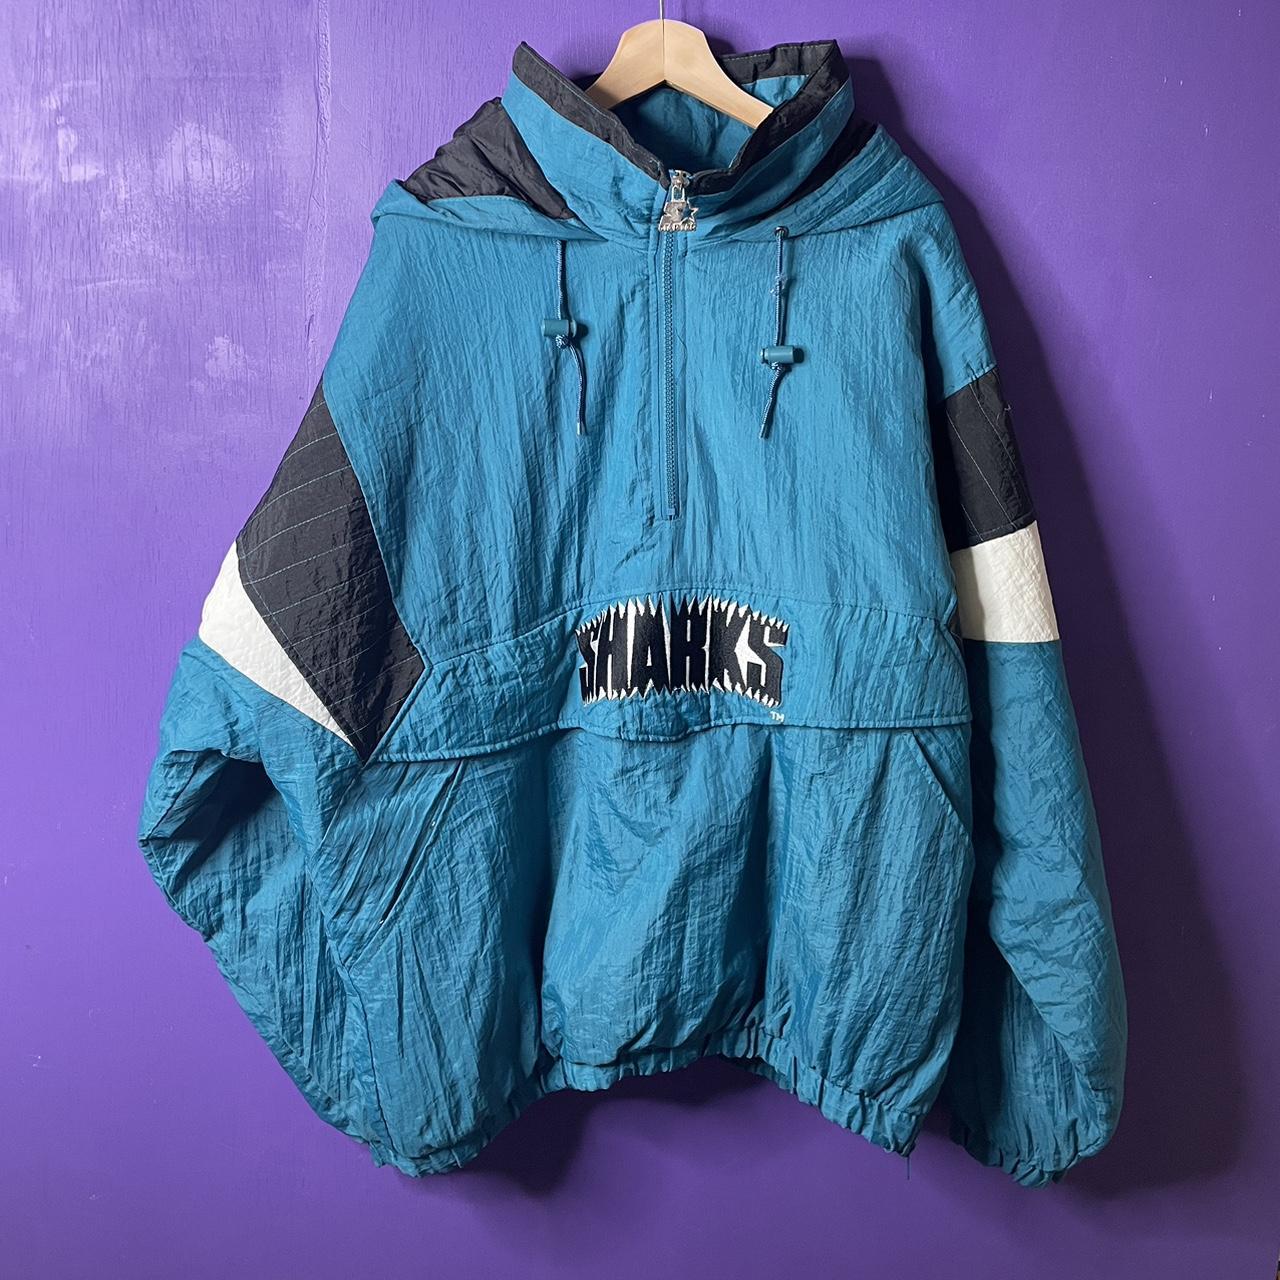 Vintage Starter San Jose Sharks Jacket XLarge